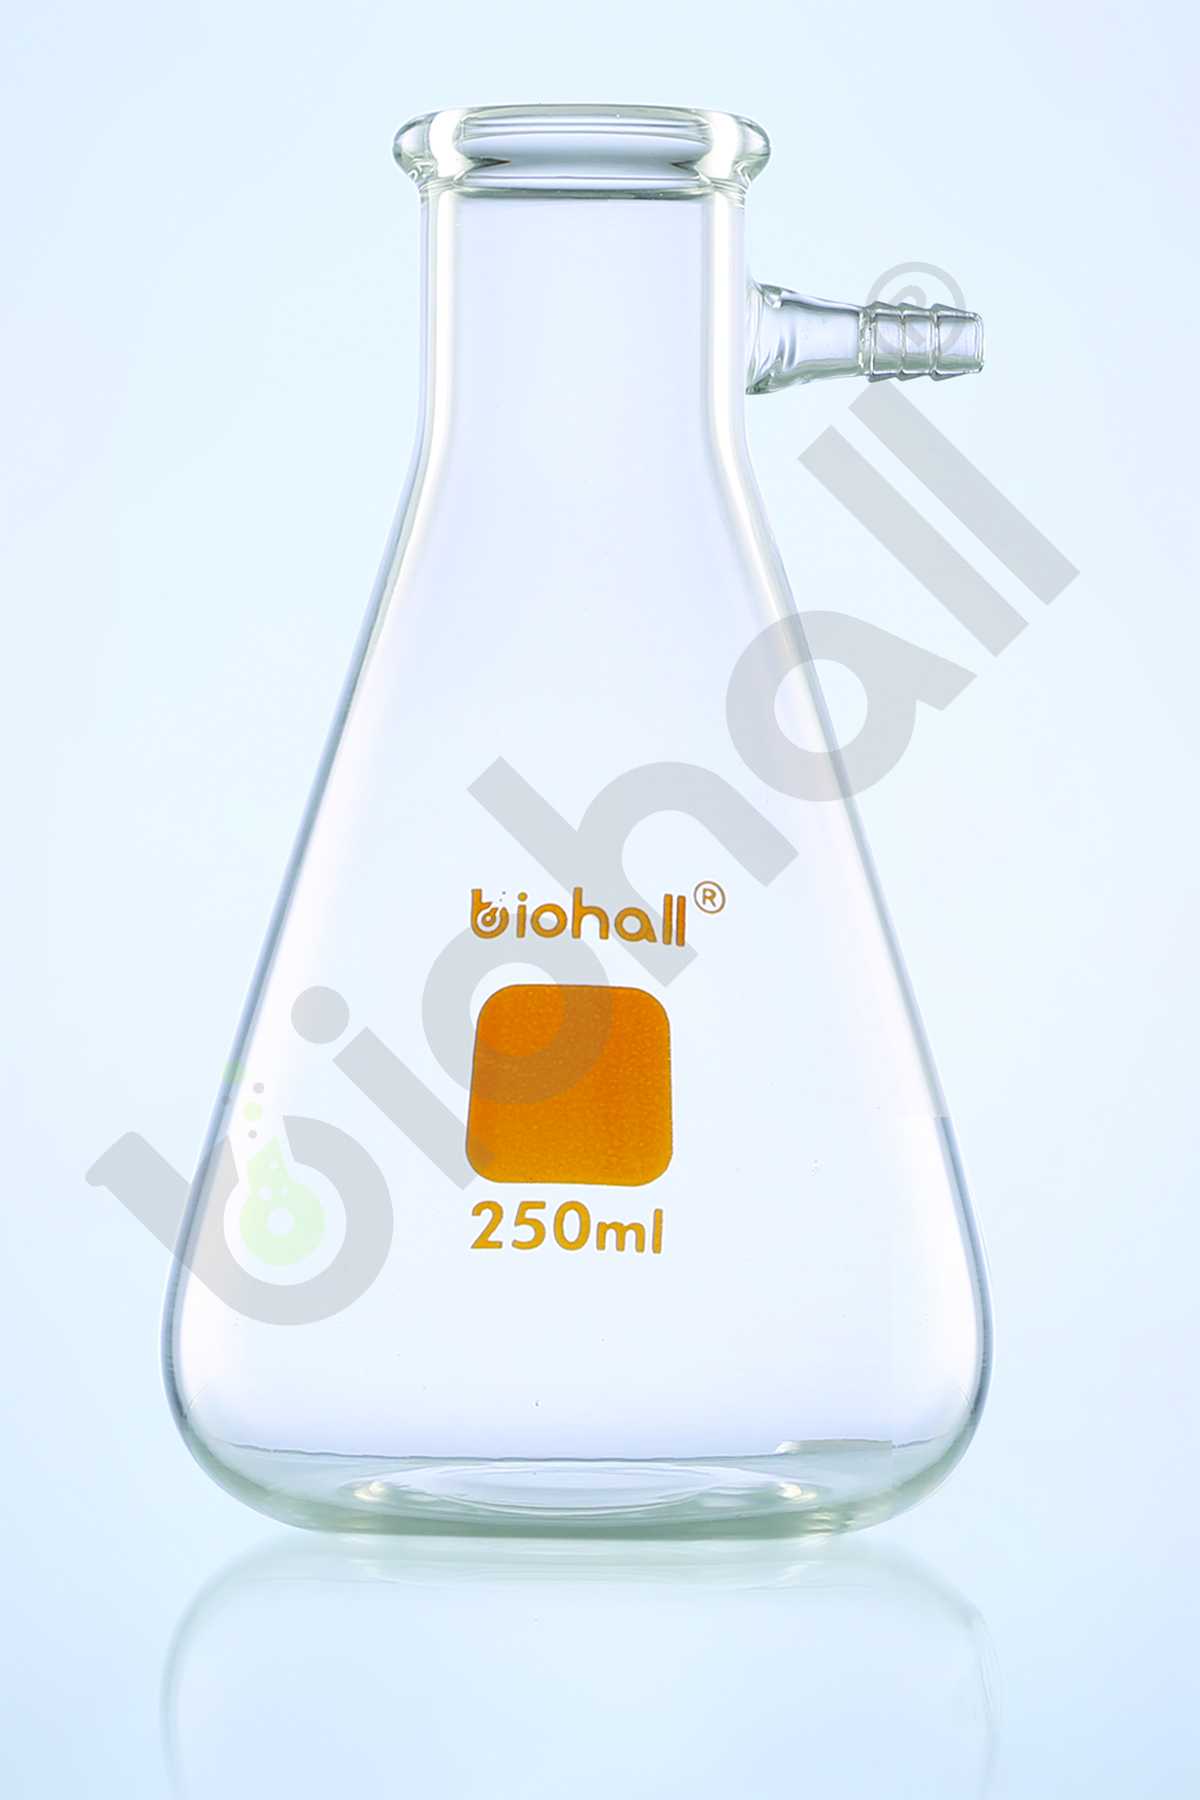 Filter Flask (Buchner Flask)